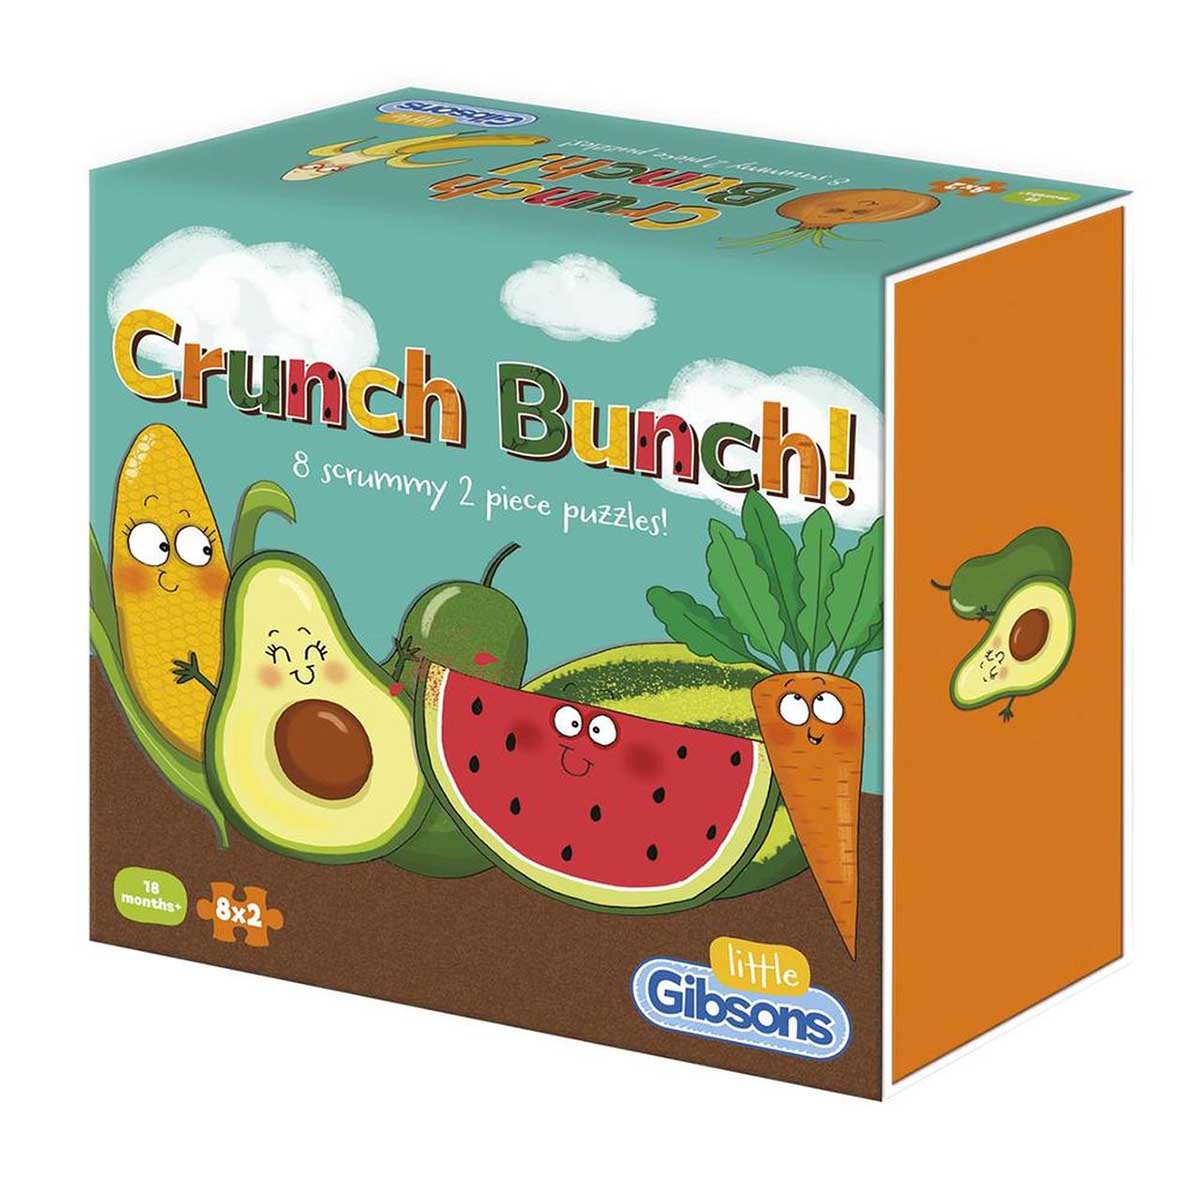 Crunch Bunch